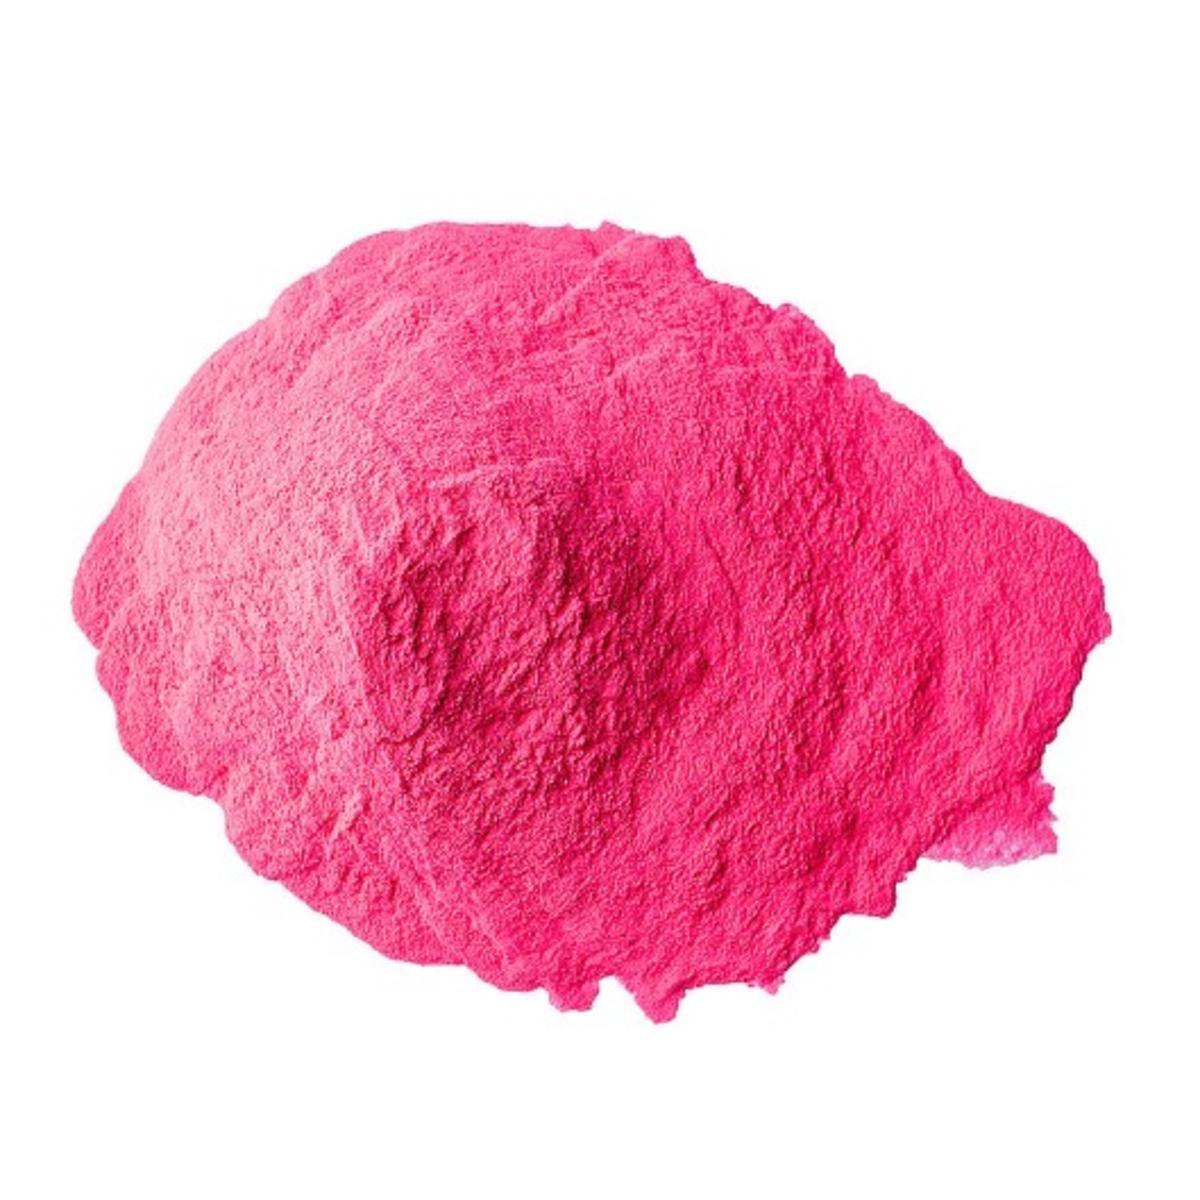 Poudre colorée Holi - 70 g - Rose